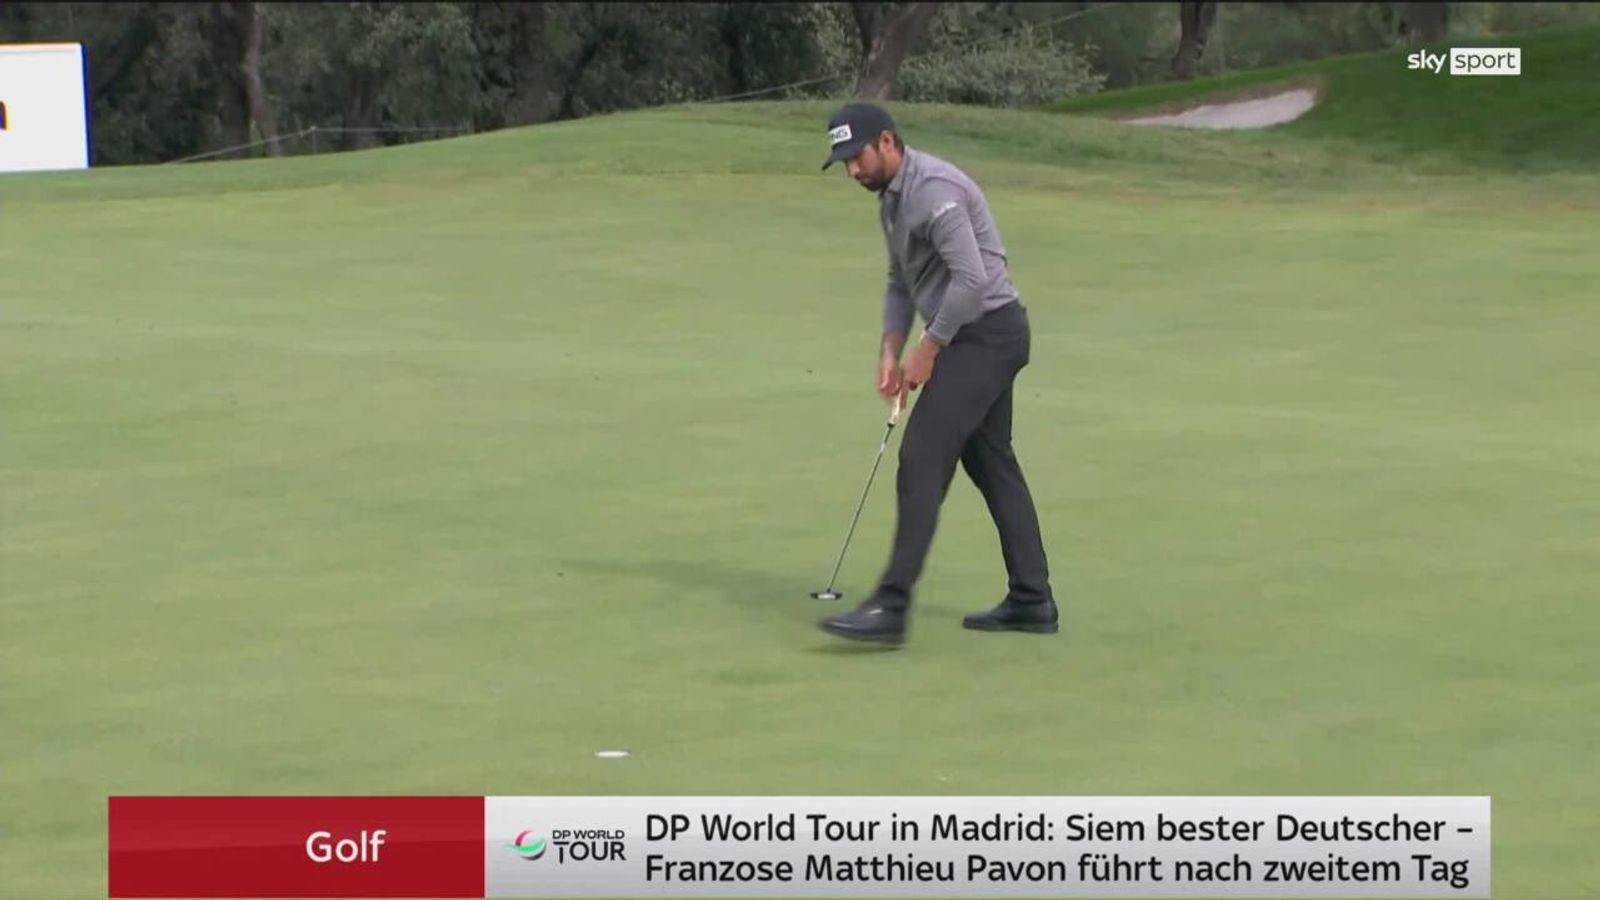 Golf Siem bester Deutscher in Madrid Golf News Sky Sport